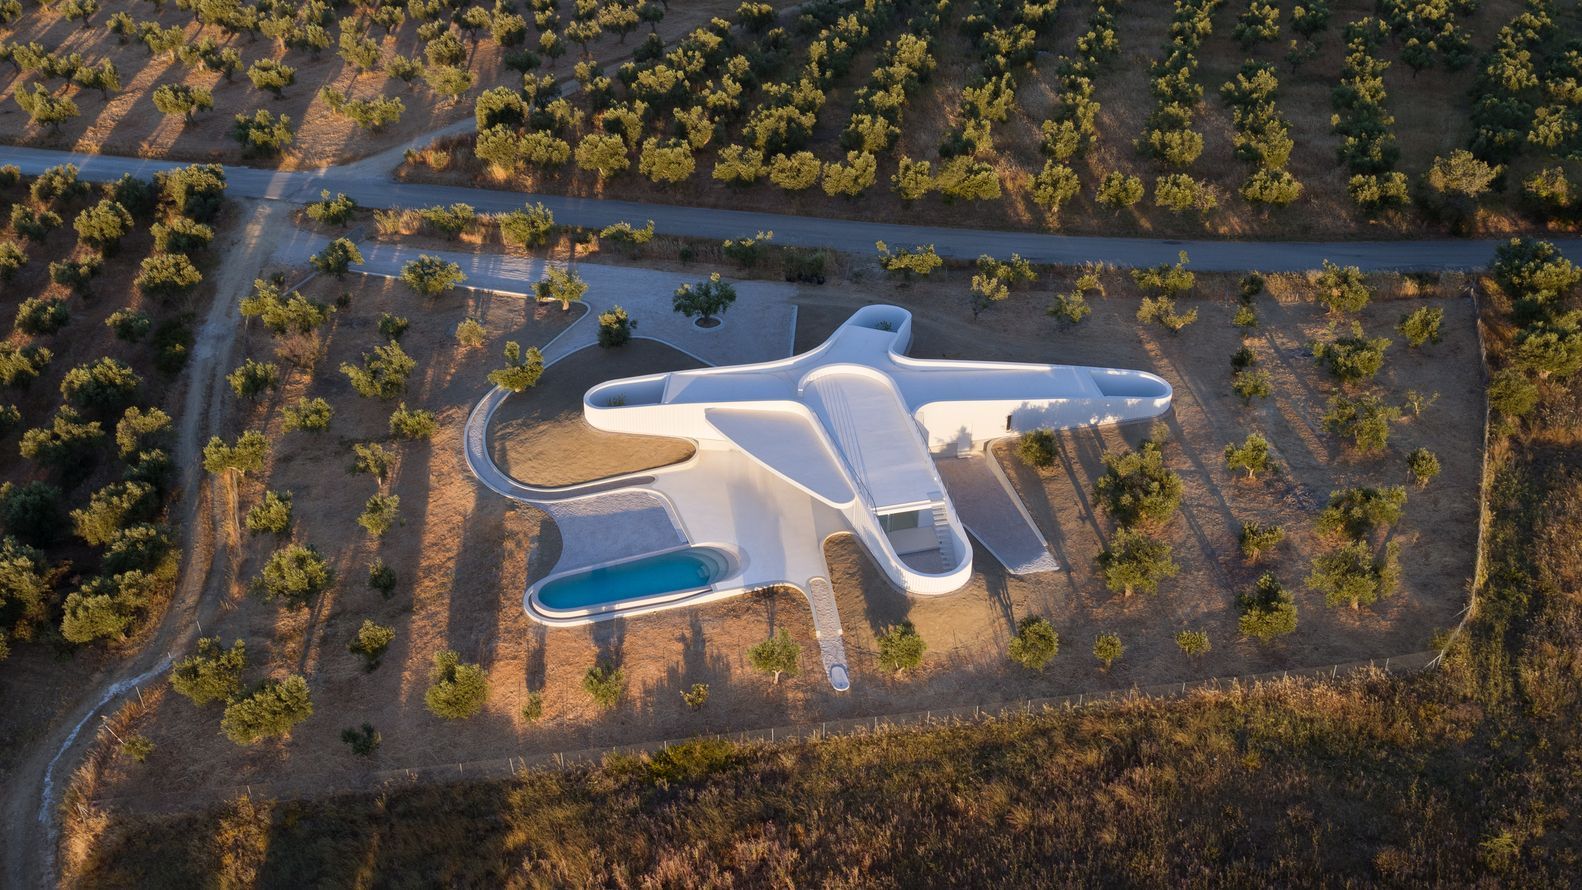 Будинок-літак, що загубився в оливкових садах Греції: фото мінімалістичного проєкту